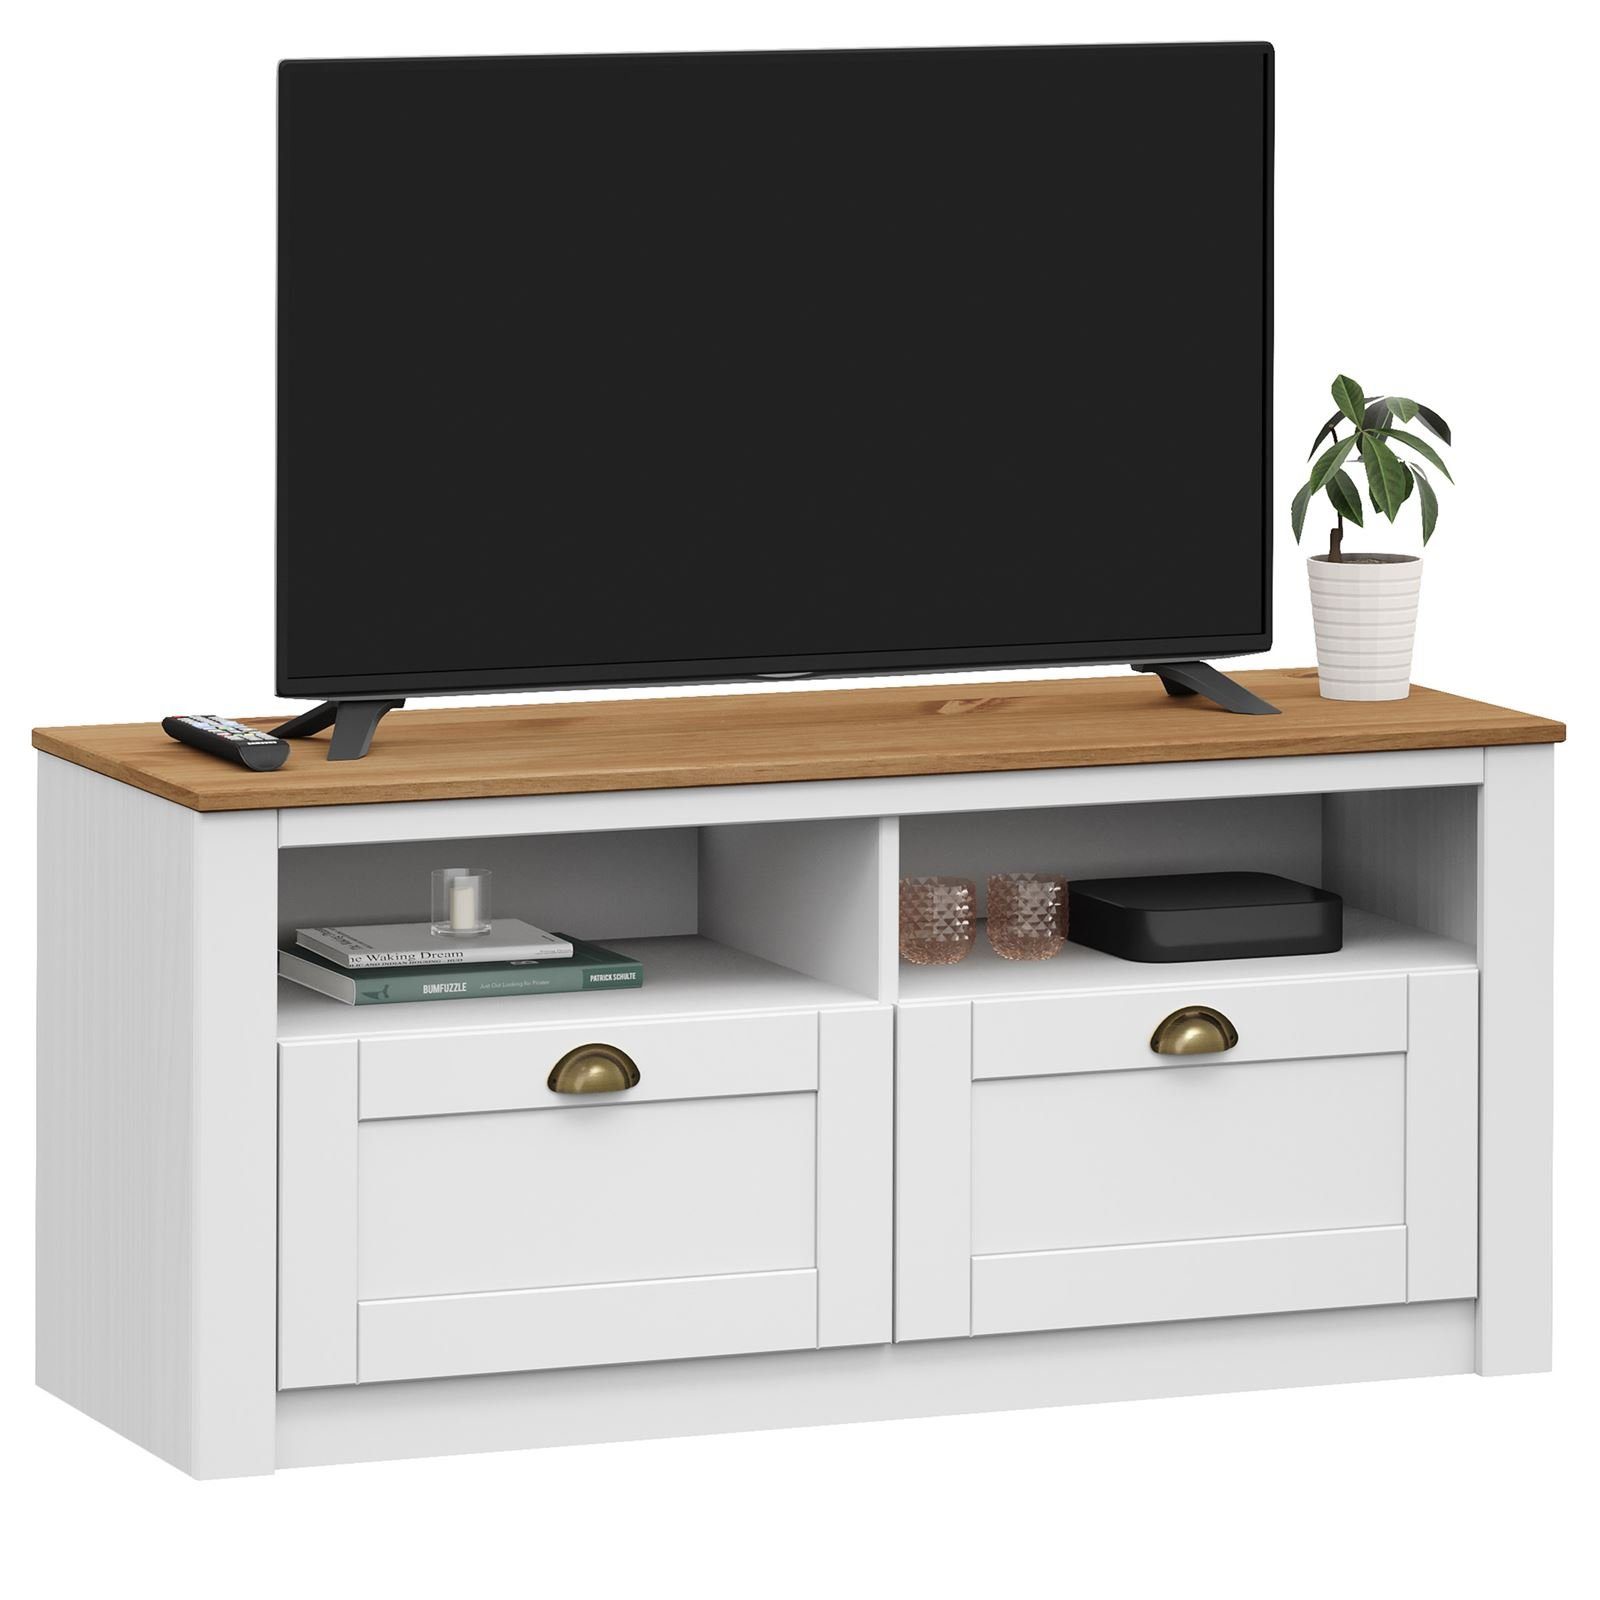 IDIMEX Lowboard BOLTON, TV Lowboard aus Kiefer massiv in weiß/braun TV Bank mit 2 Schubladen